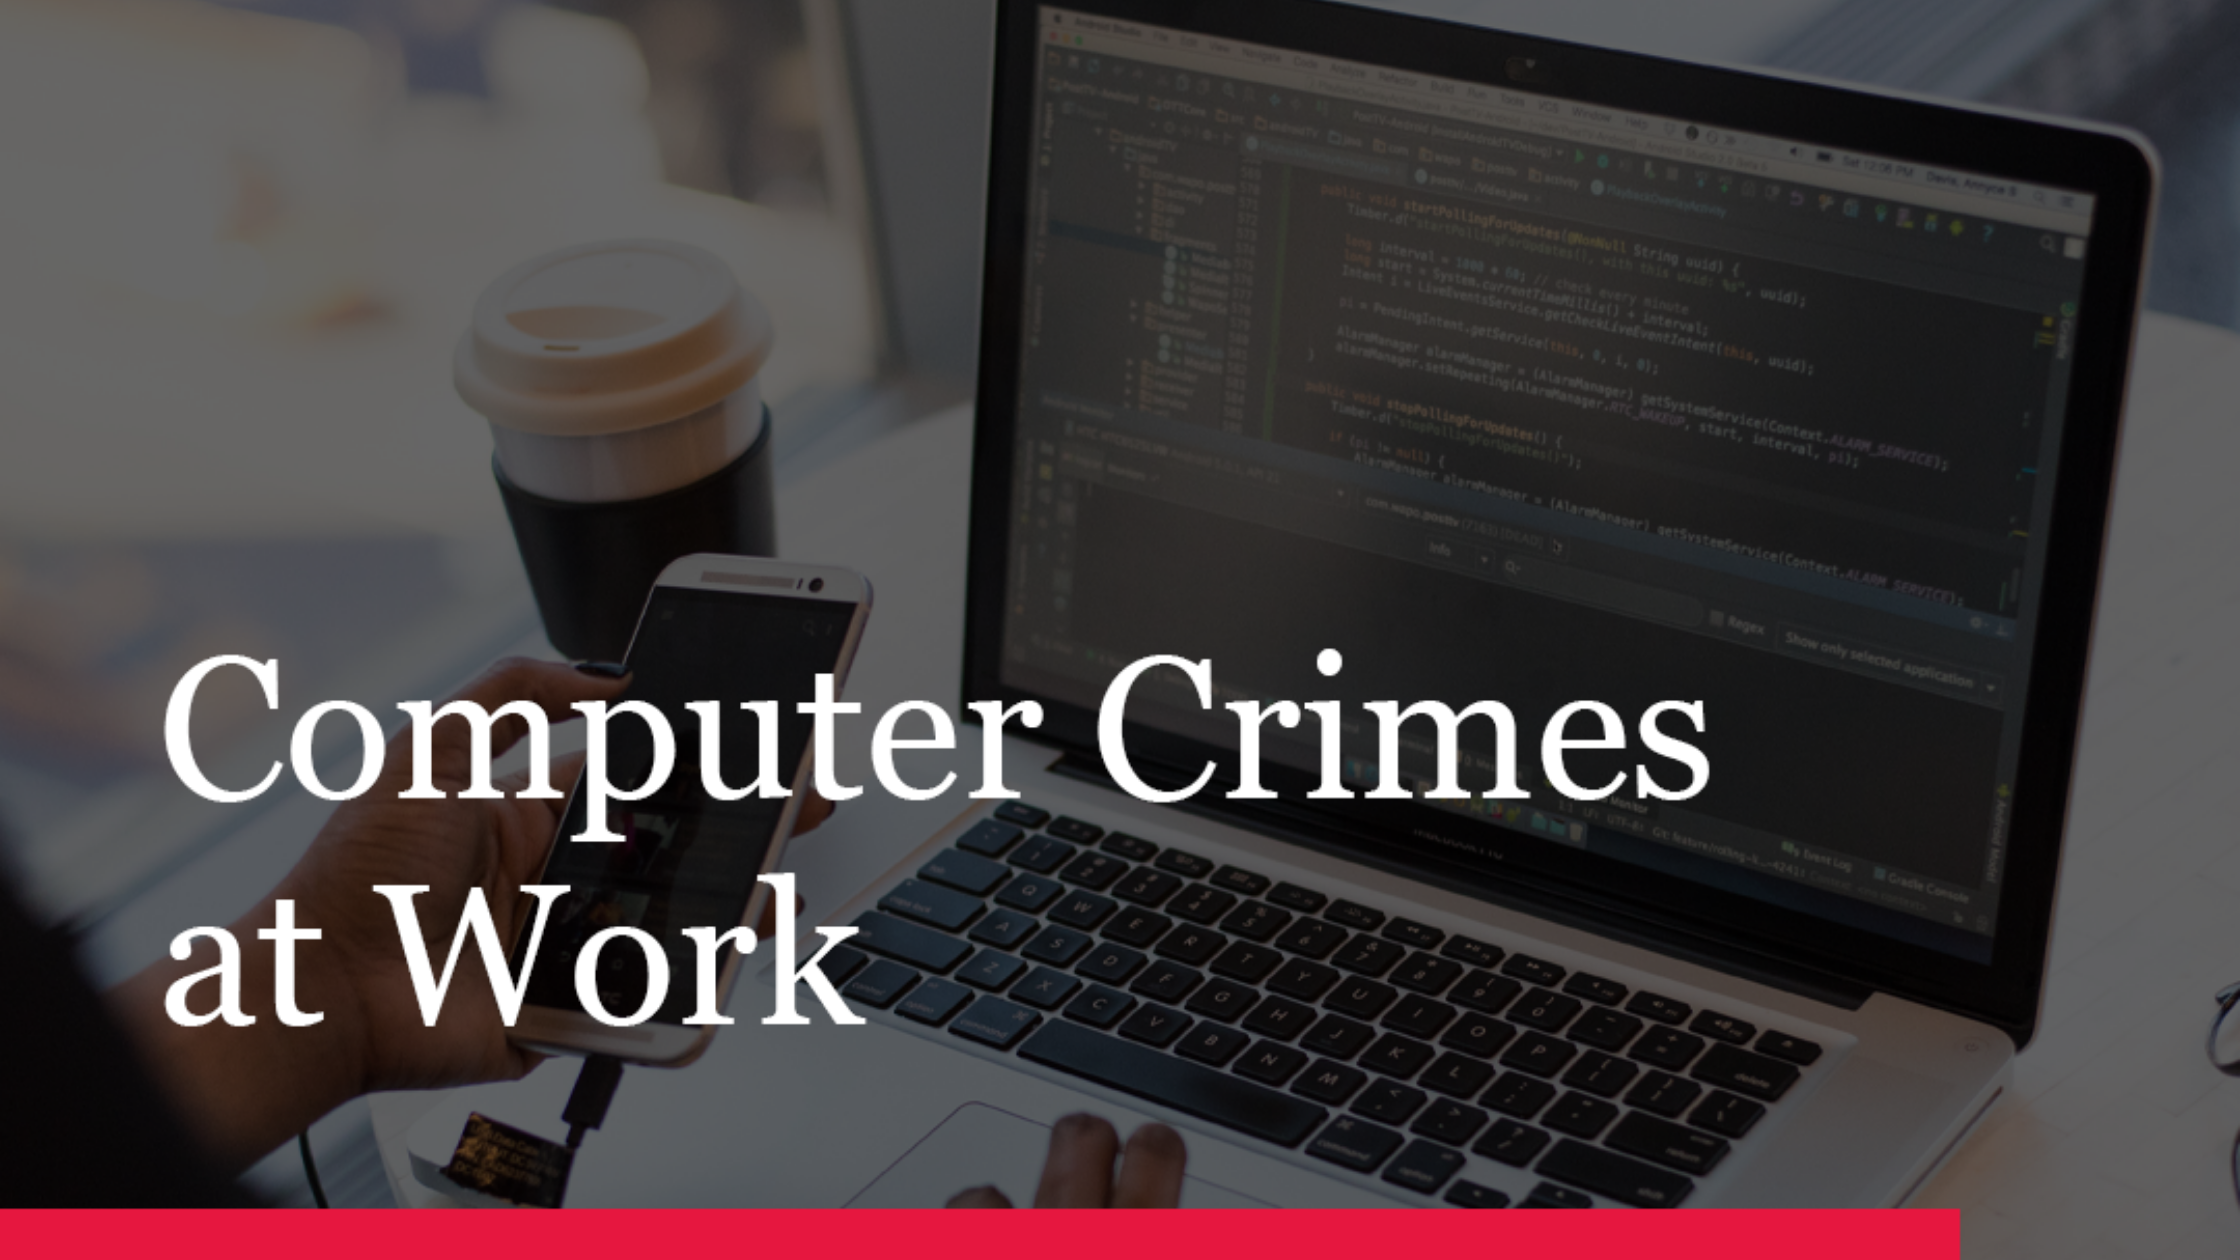 Computer crimes at work